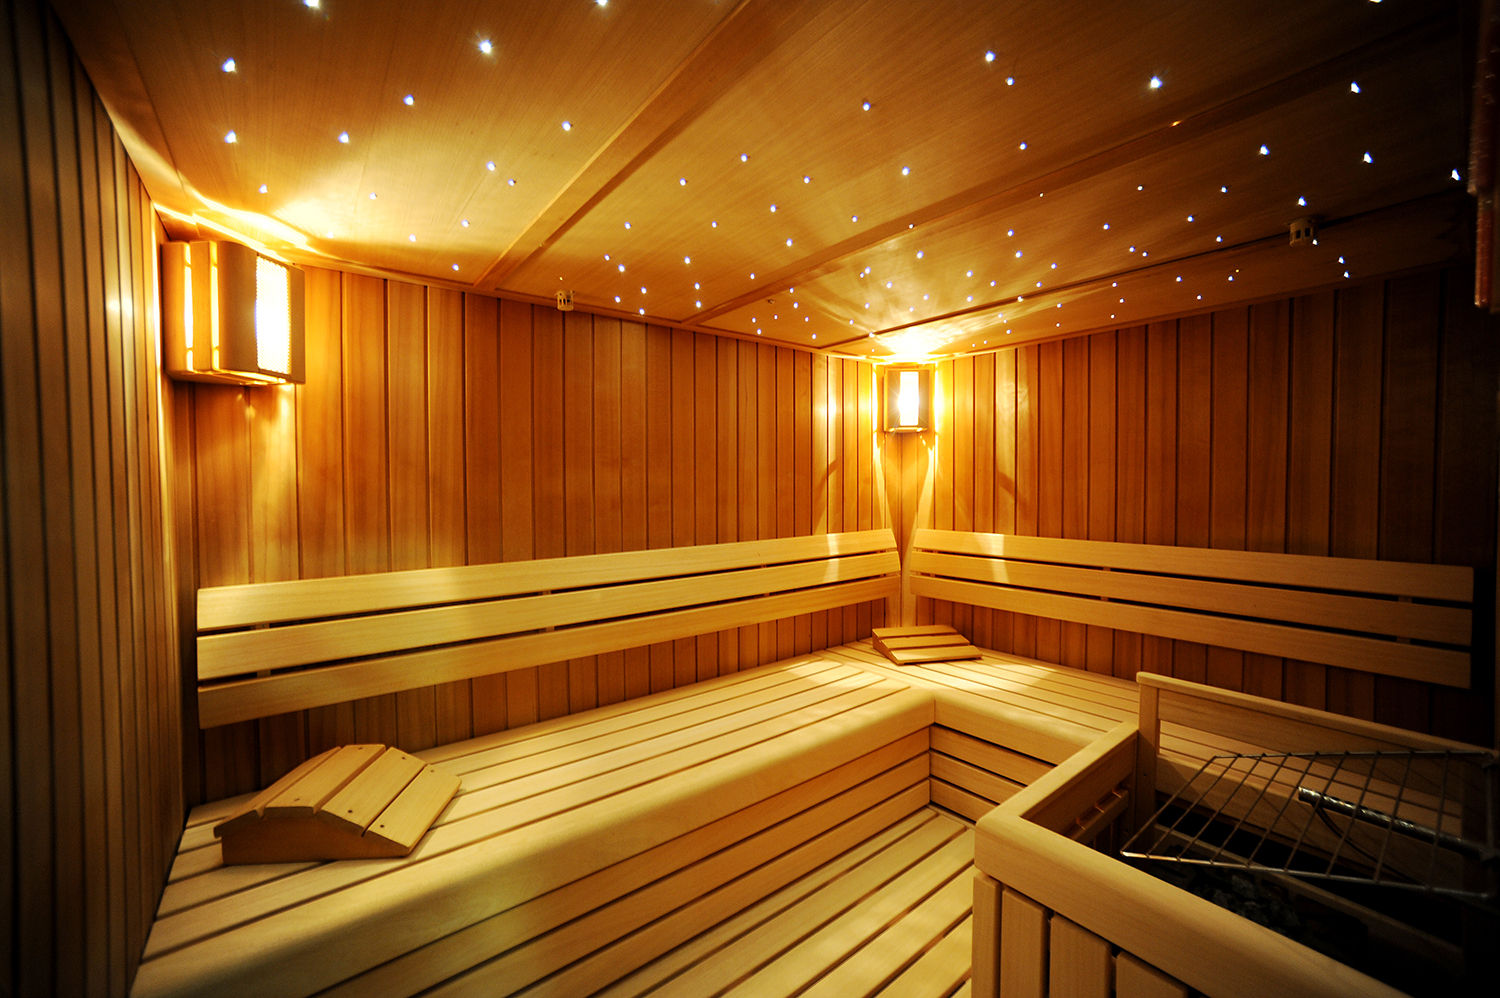 La sala più piccola ospita una sauna aromatizzata all’eucalipto, che ci farà respirare liberamente. Foto: IKB